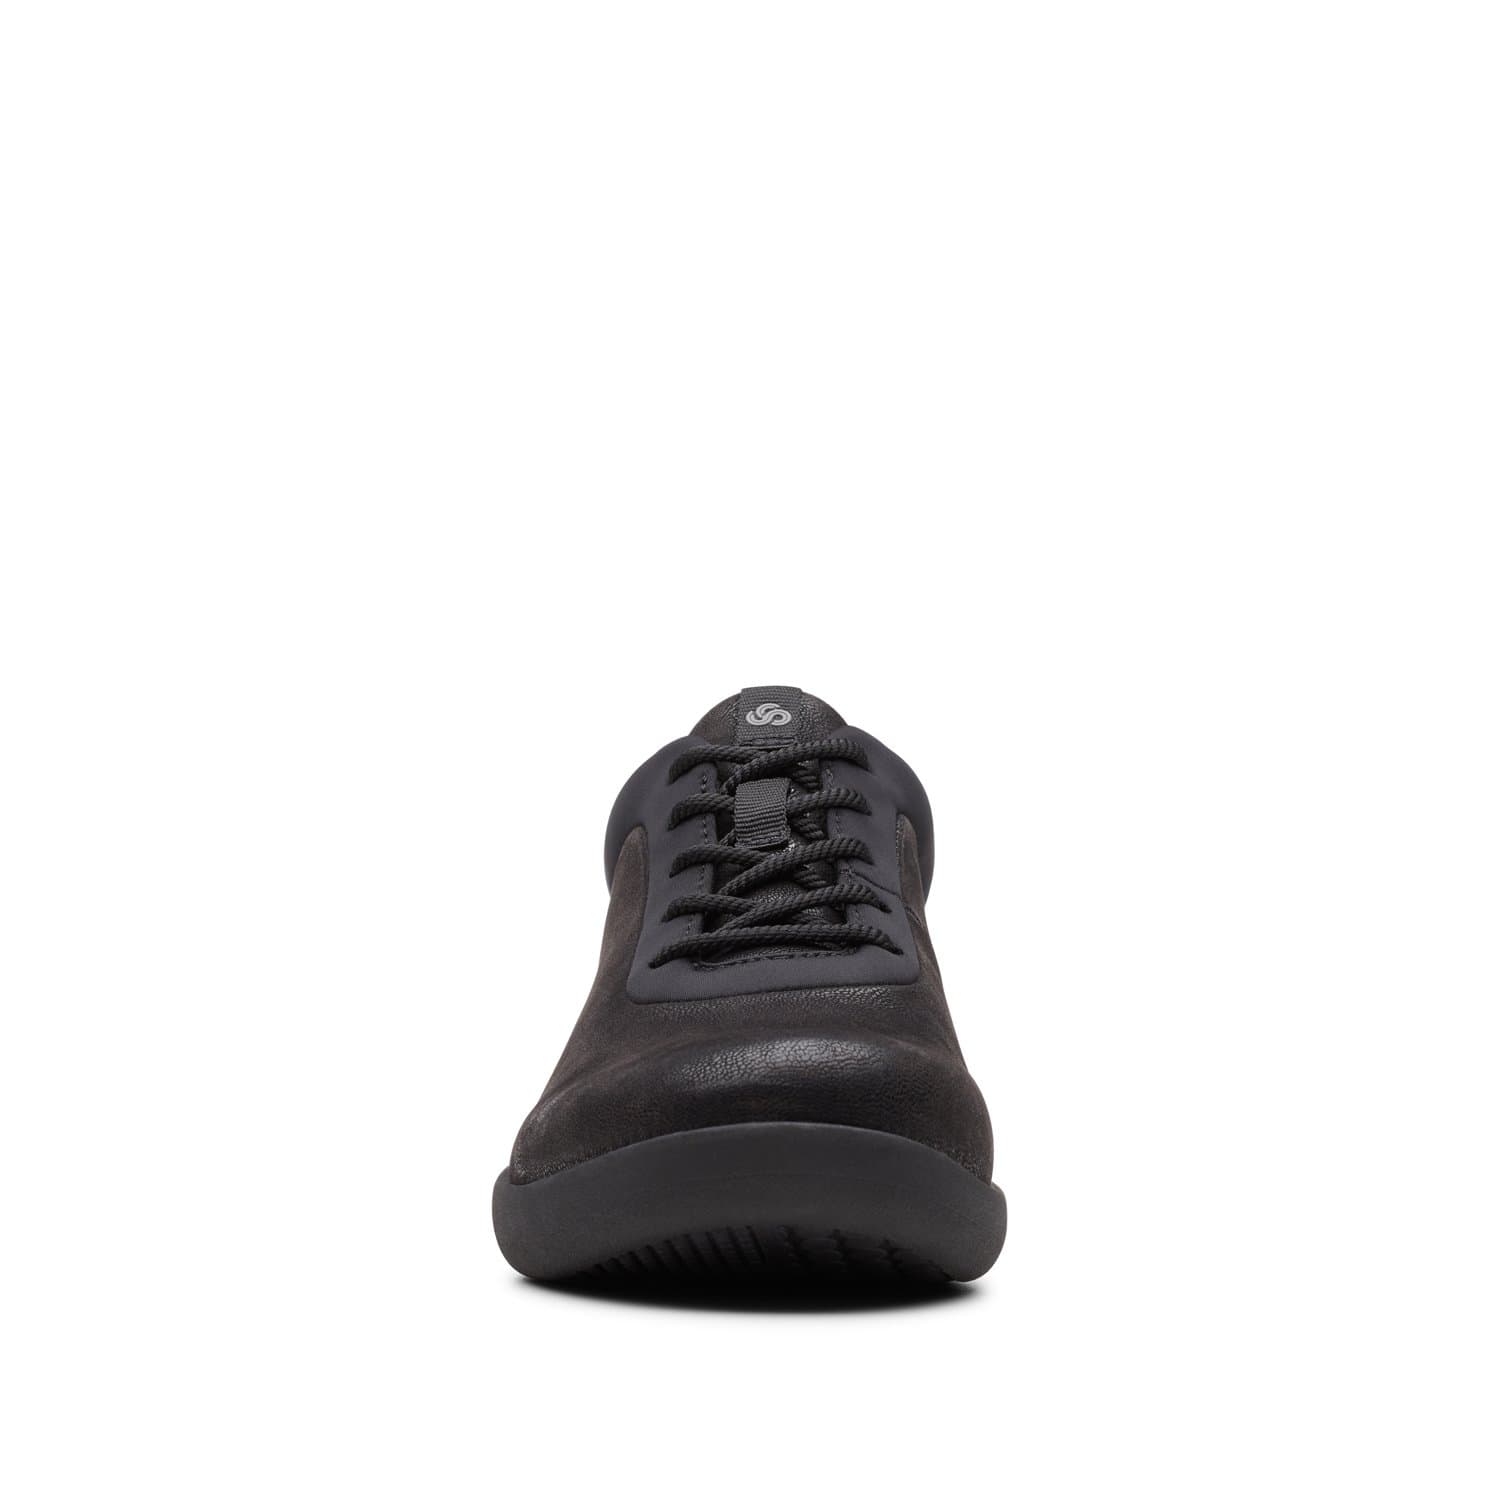 Clarks-Sillian2.0Pace-Women's-Shoes-Black-Textile-26146199